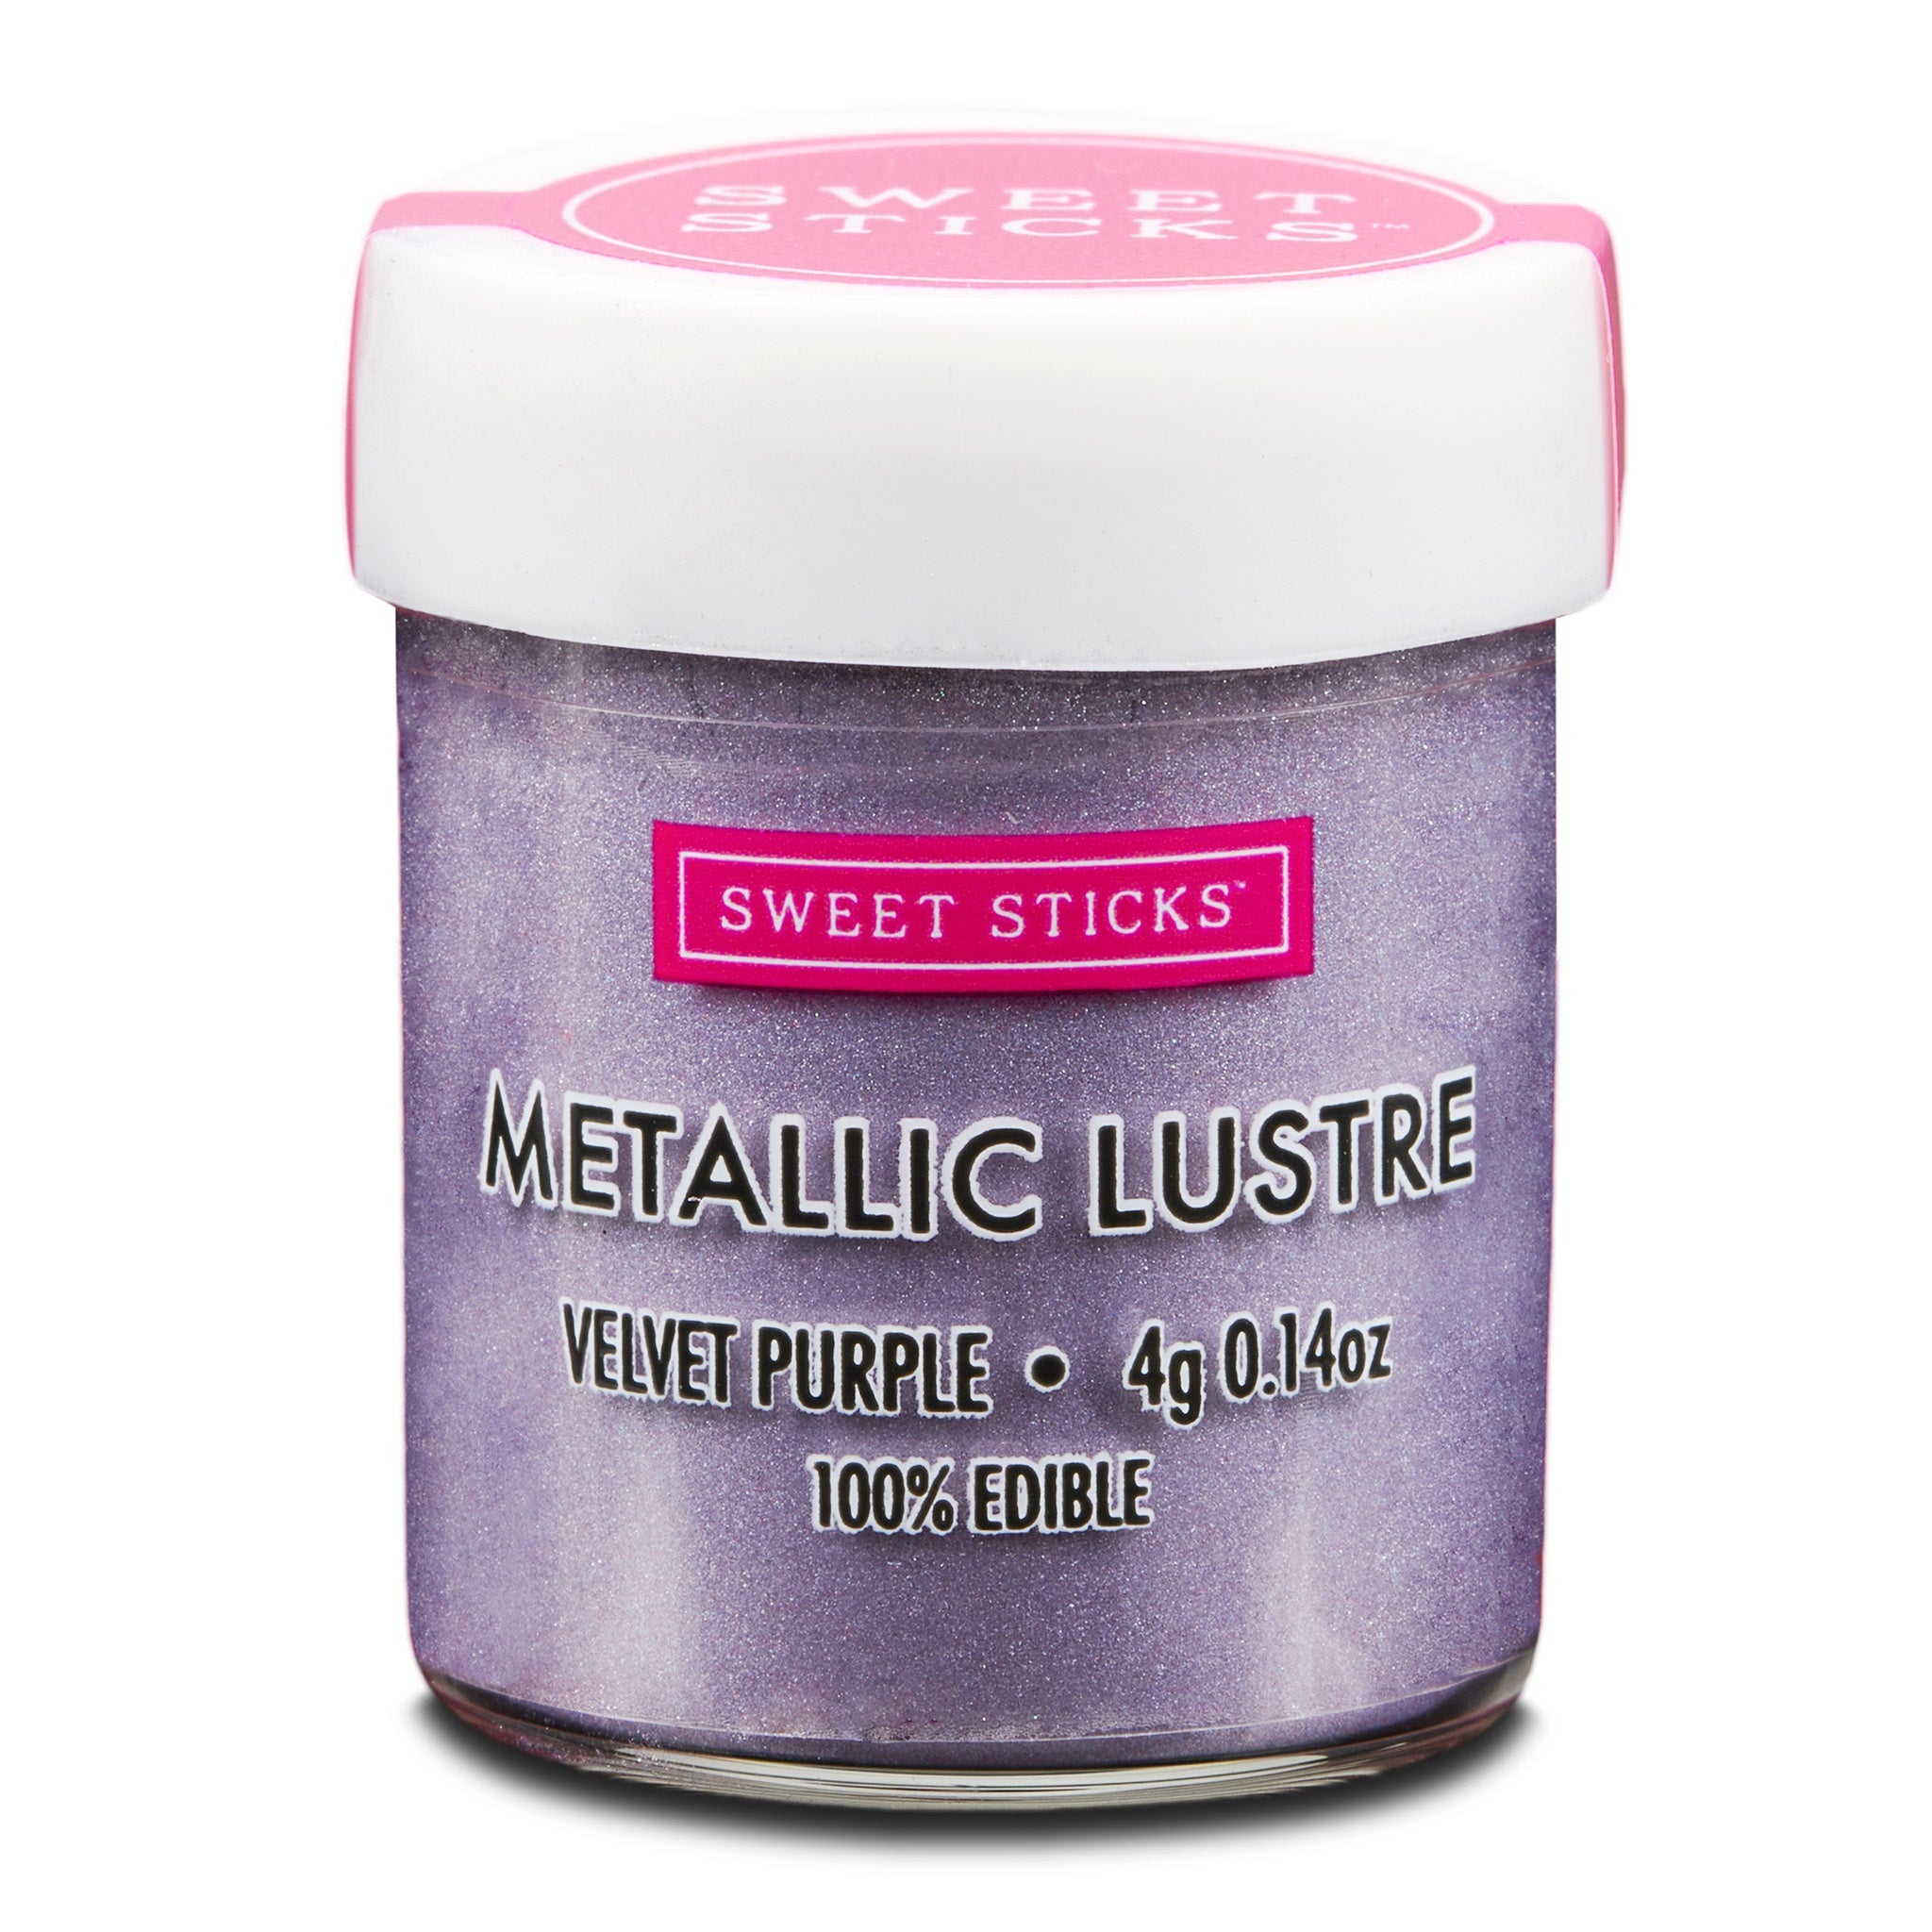 Sweet Sticks Metallic Lustre 4g - Velvet Purple